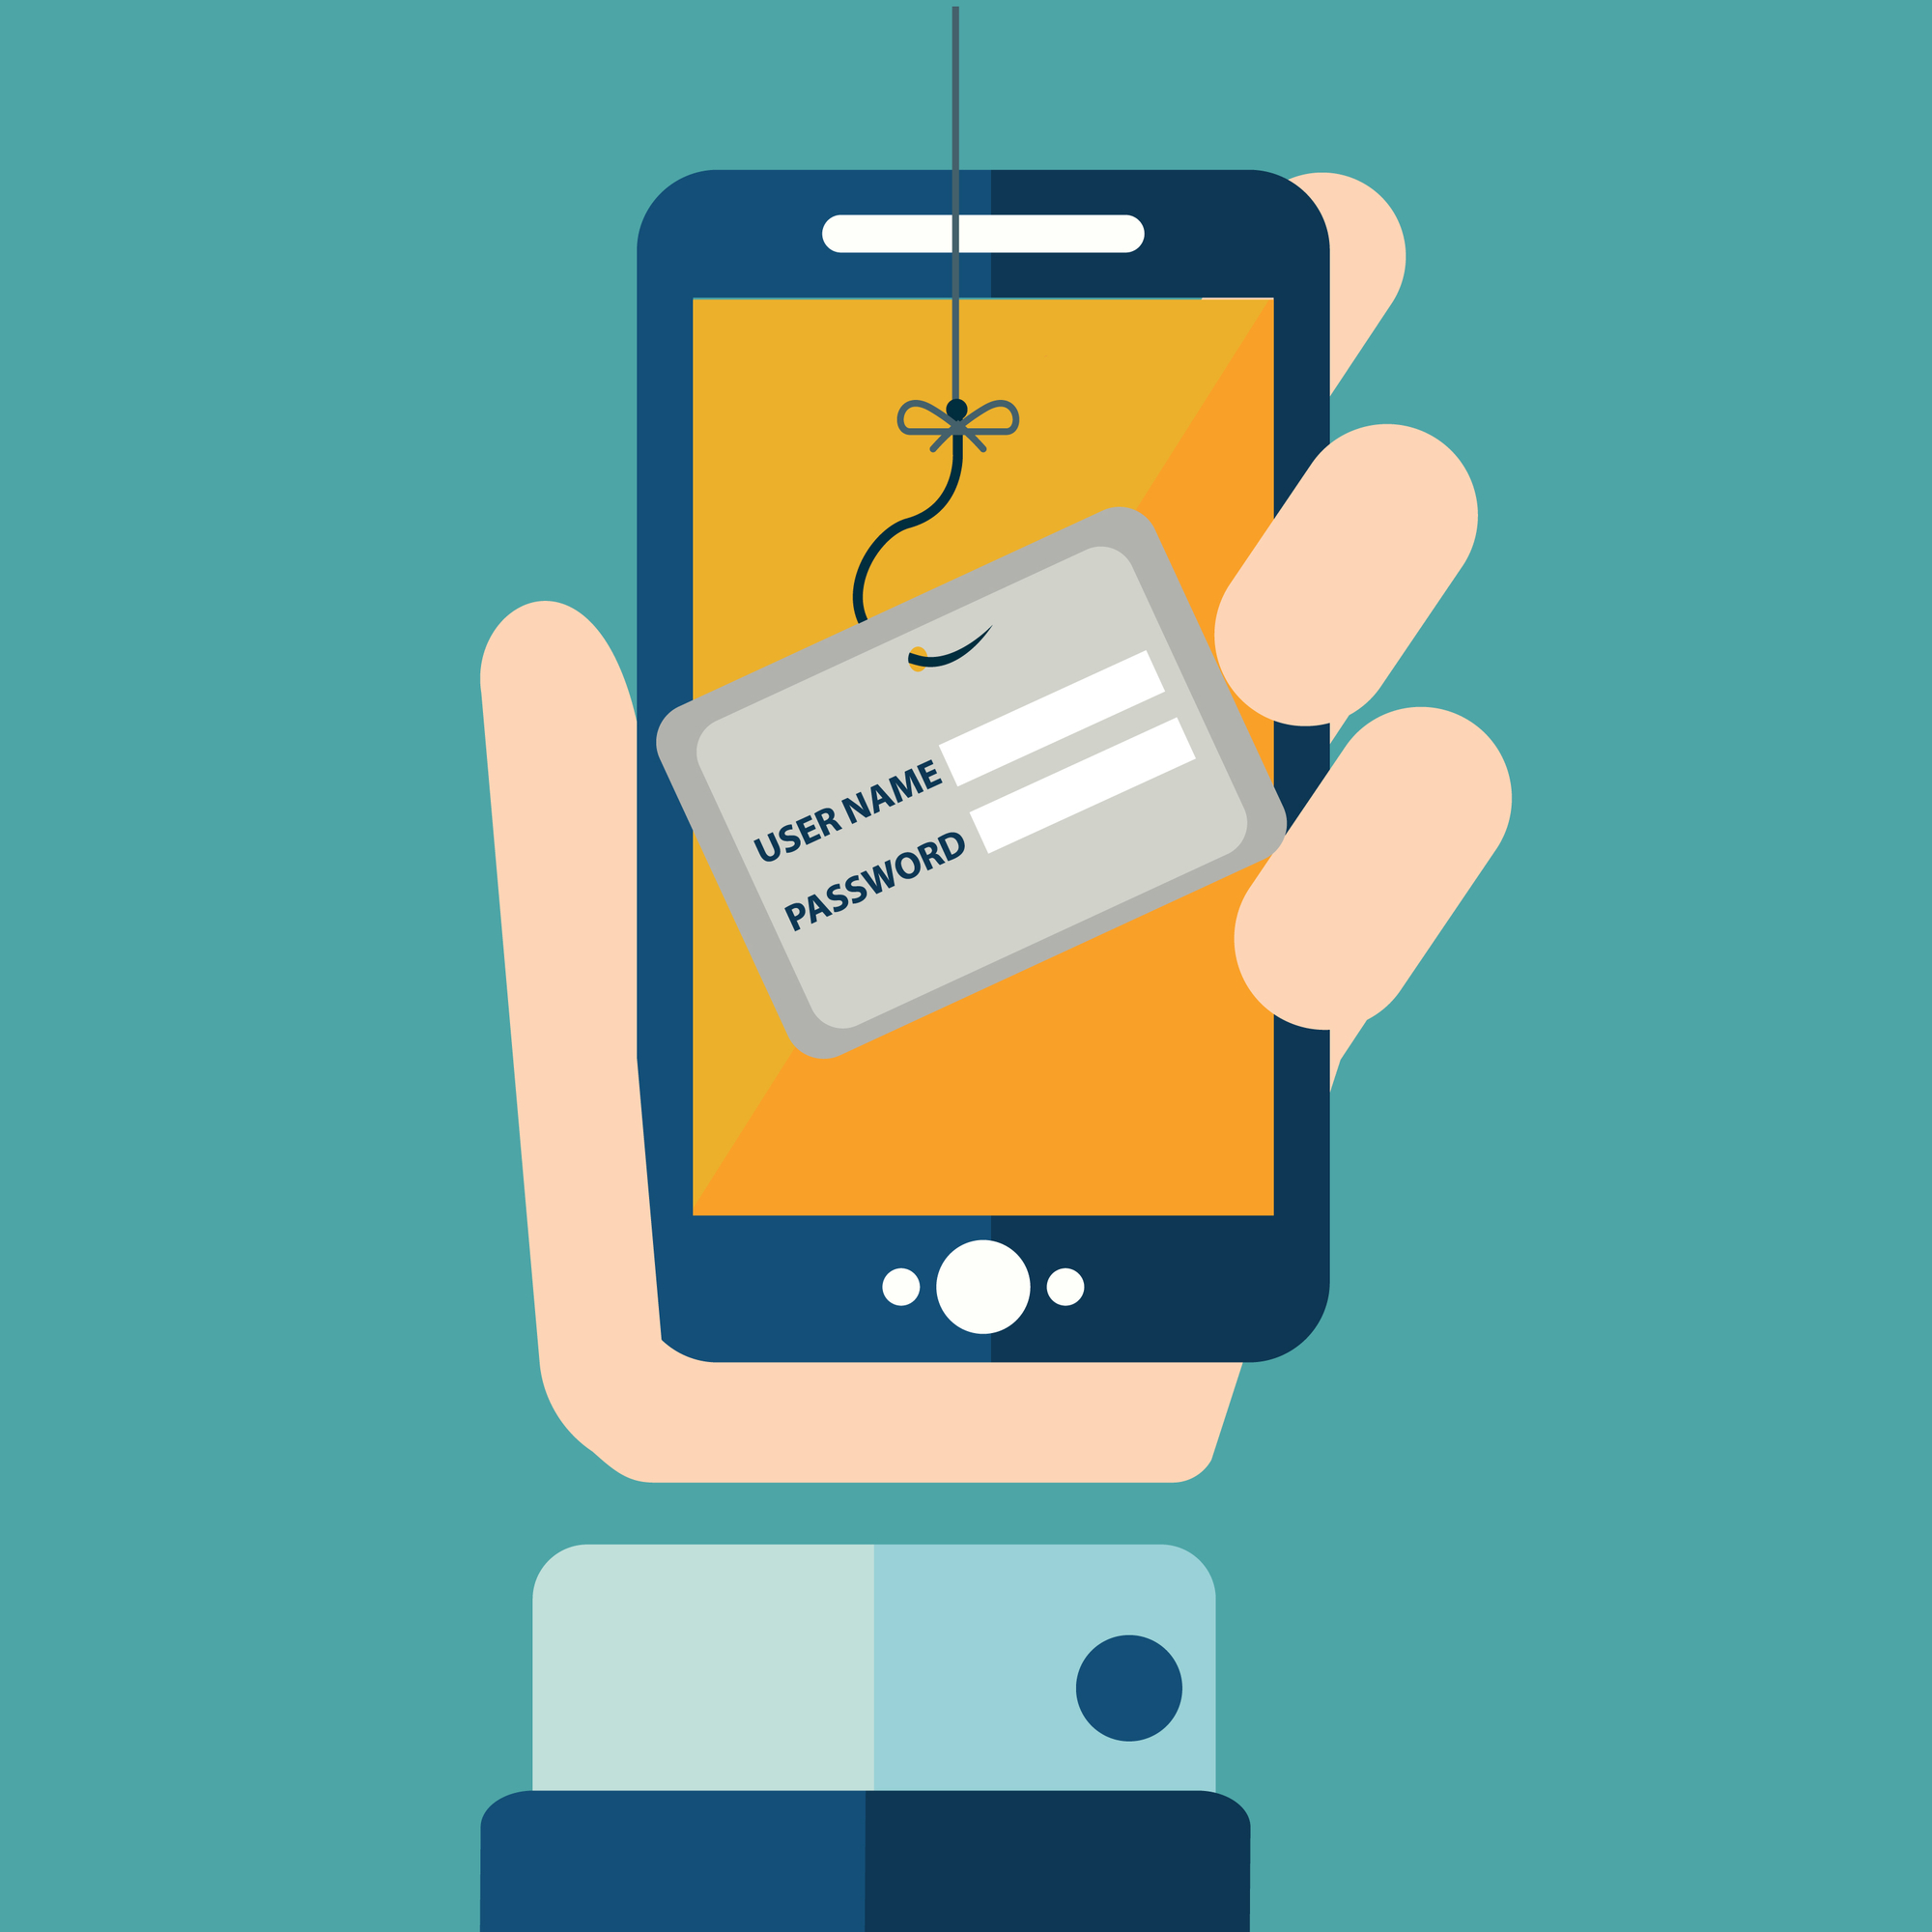 Banking-Trojaner auf einem Smartphone greift sensible Daten ab (Symbolbild)